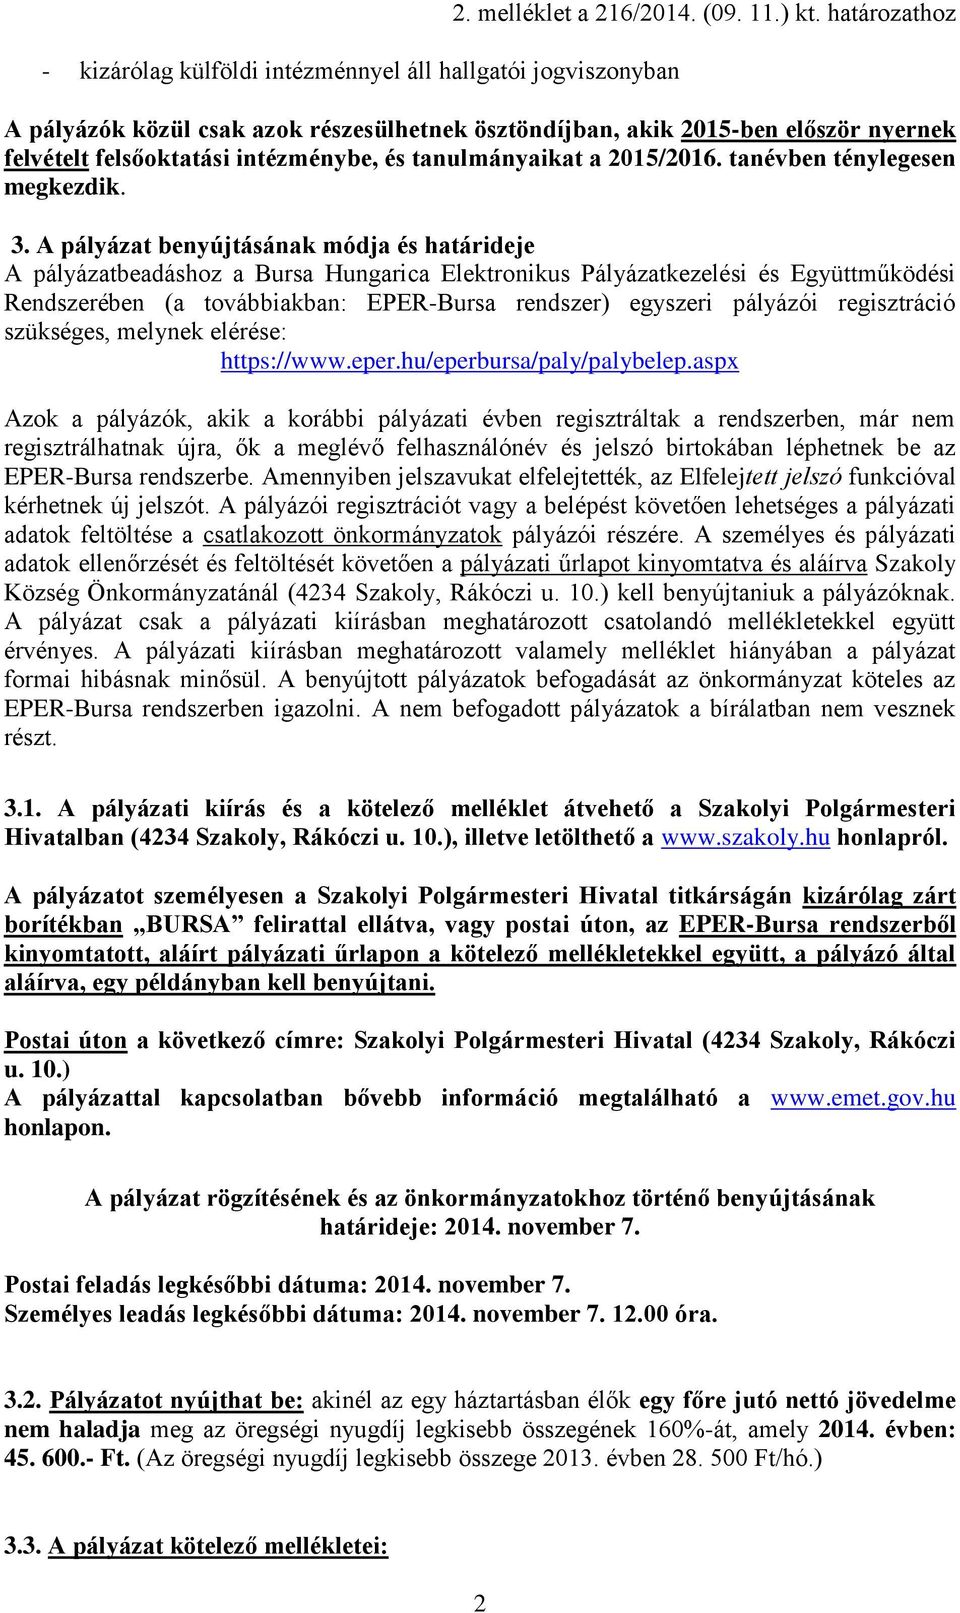 3. A pályázat benyújtásának módja és határideje A pályázatbeadáshoz a Bursa Hungarica Elektronikus Pályázatkezelési és Együttműködési Rendszerében (a továbbiakban: EPER-Bursa rendszer) egyszeri